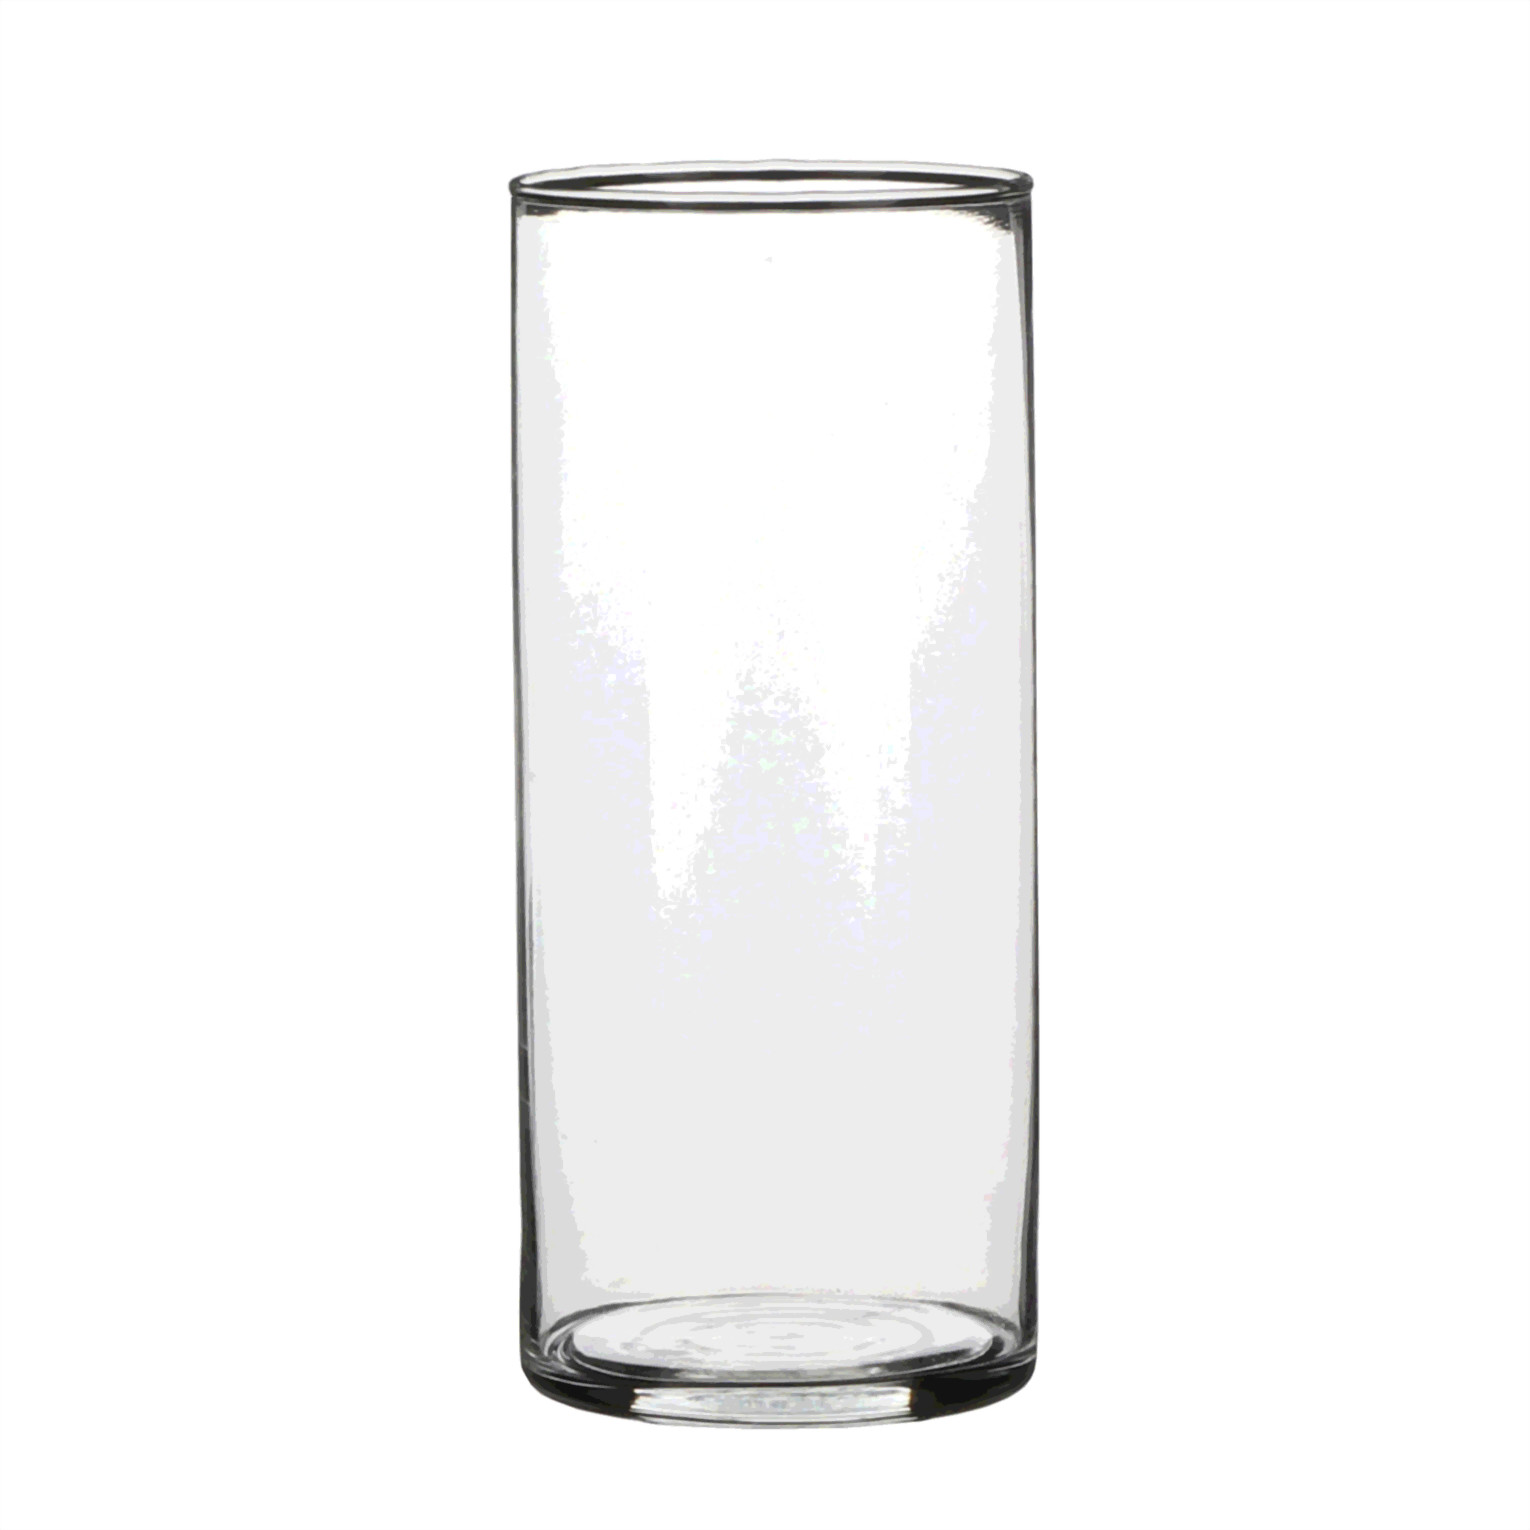 1x Glazen cilinder vaas-vazen 19 cm rond